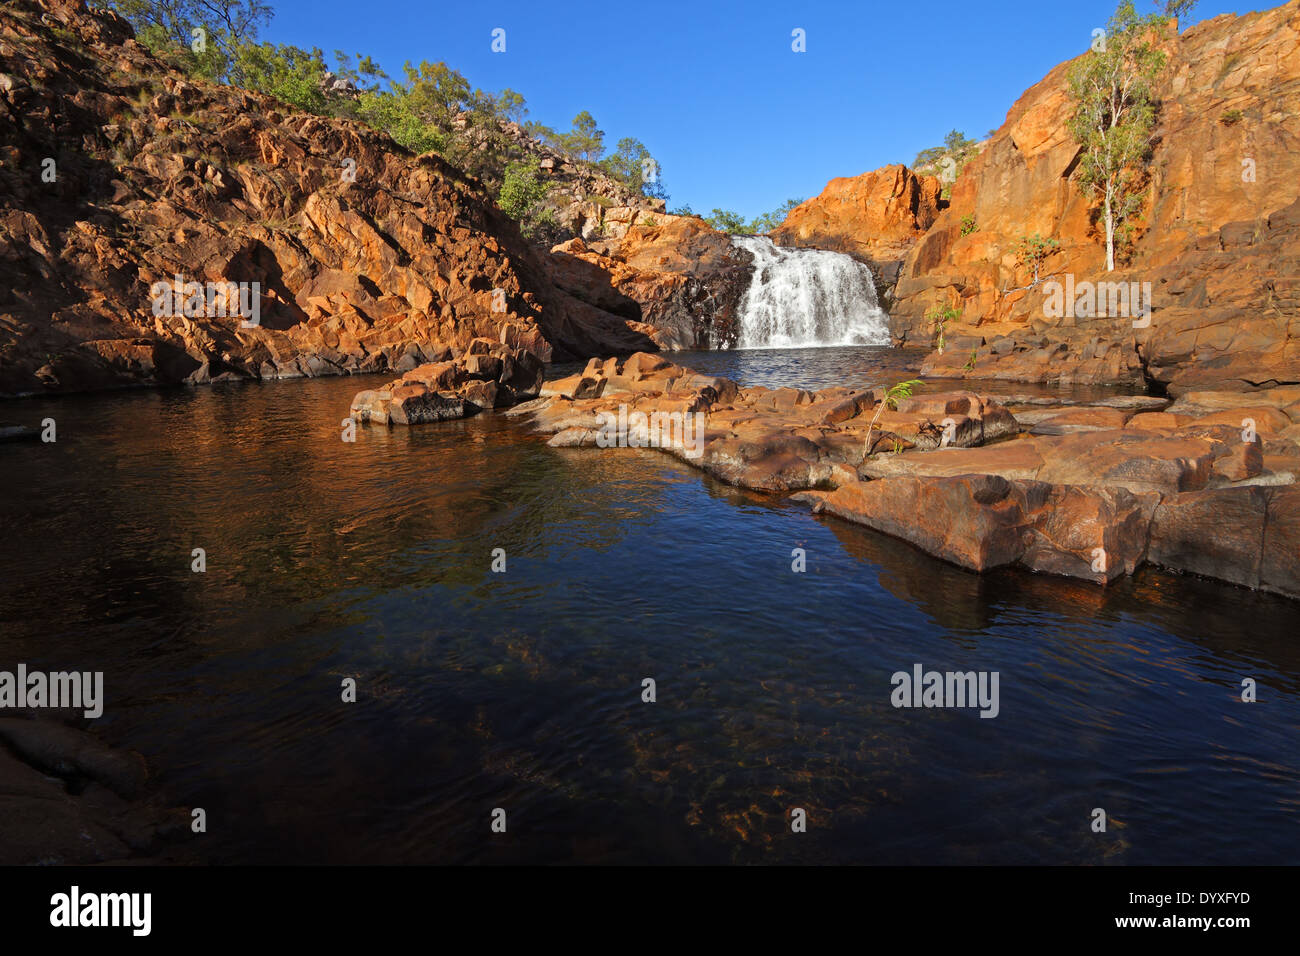 Petite cascade et piscine à l'eau claire, le Parc National de Kakadu, Australie Banque D'Images